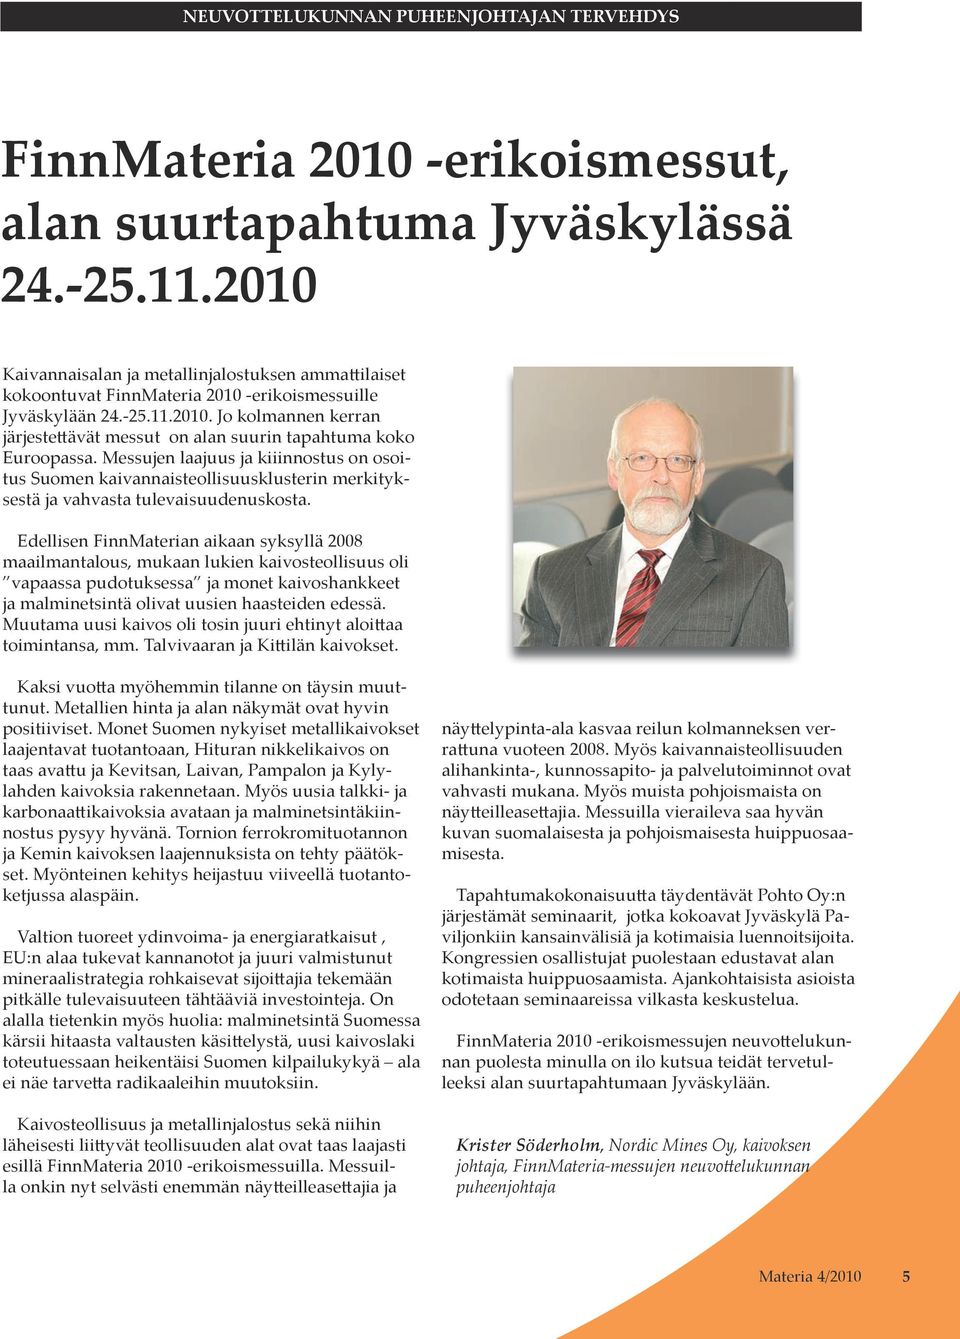 Messujen laajuus ja kiiinnostus on osoitus Suomen kaivannaisteollisuusklusterin merkityksestä ja vahvasta tulevaisuudenuskosta.